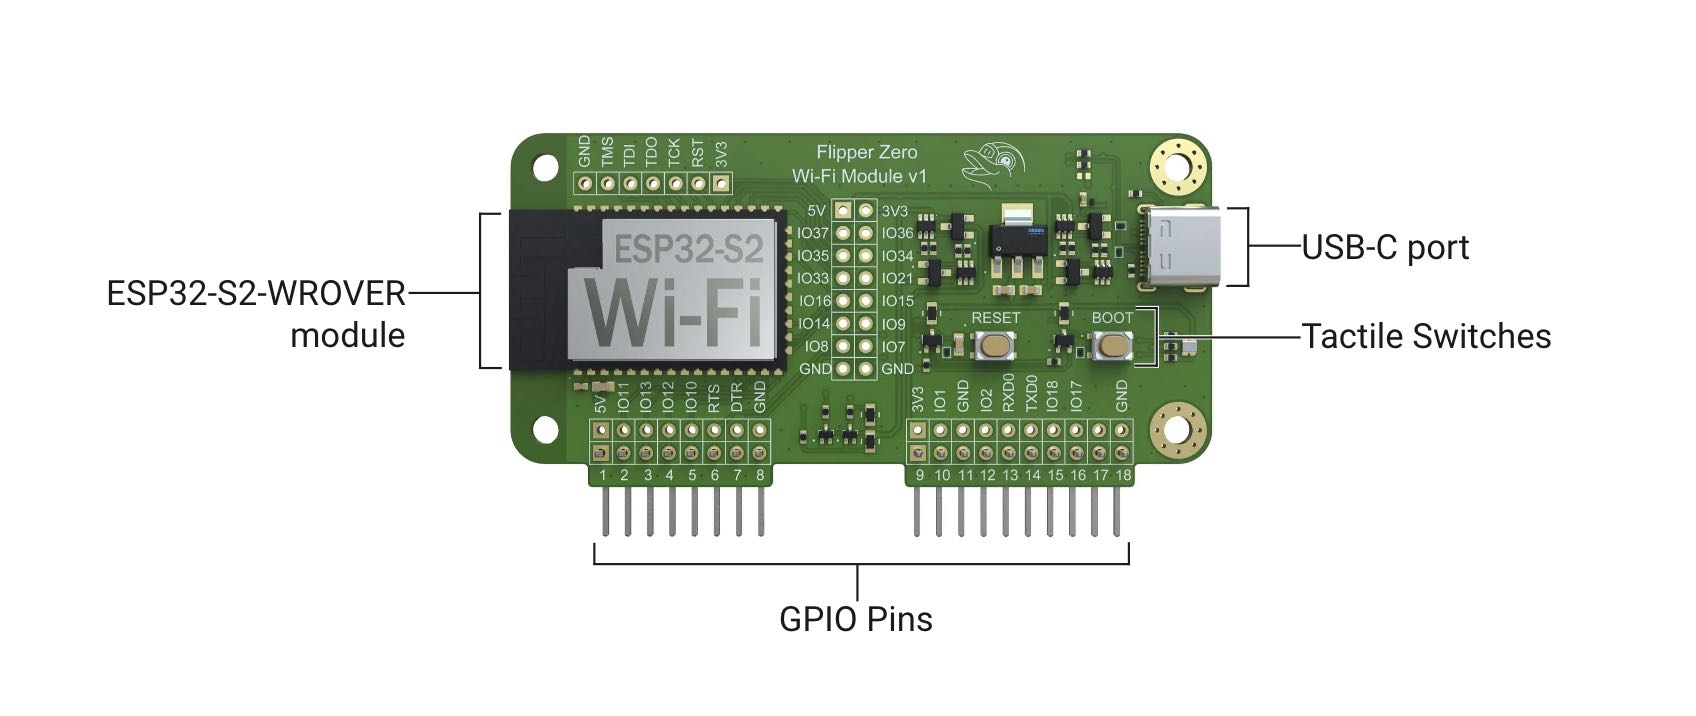  for Flipper Zero Modification Module,WiFi Multiboard  NRF24+ESP32/NRF24 Development Board,GPIO module/CC1101 Module/Mouse  Module,Attachment Accessory : Electronics